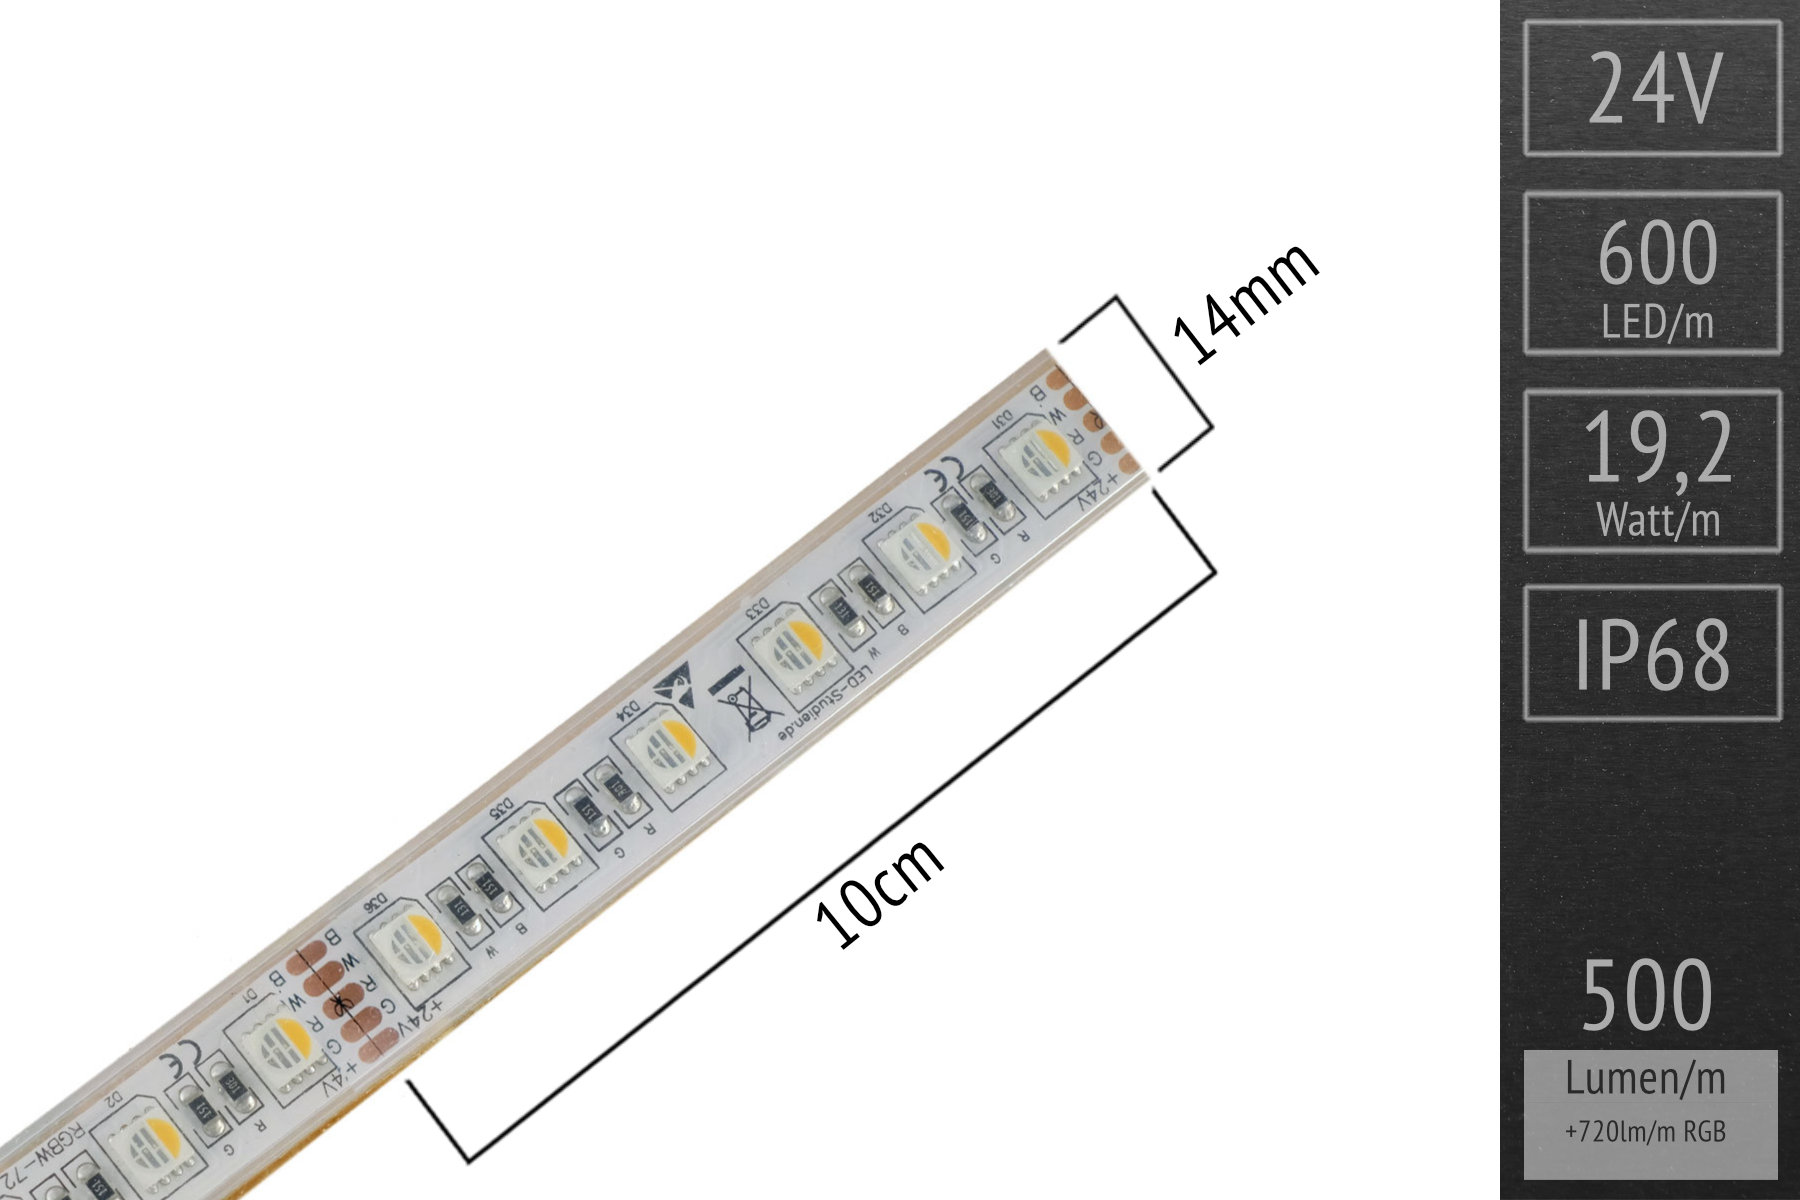 RGBWW 4in1 für Unterwasser: 60 LEDs/m - IP68 - 14mm breit